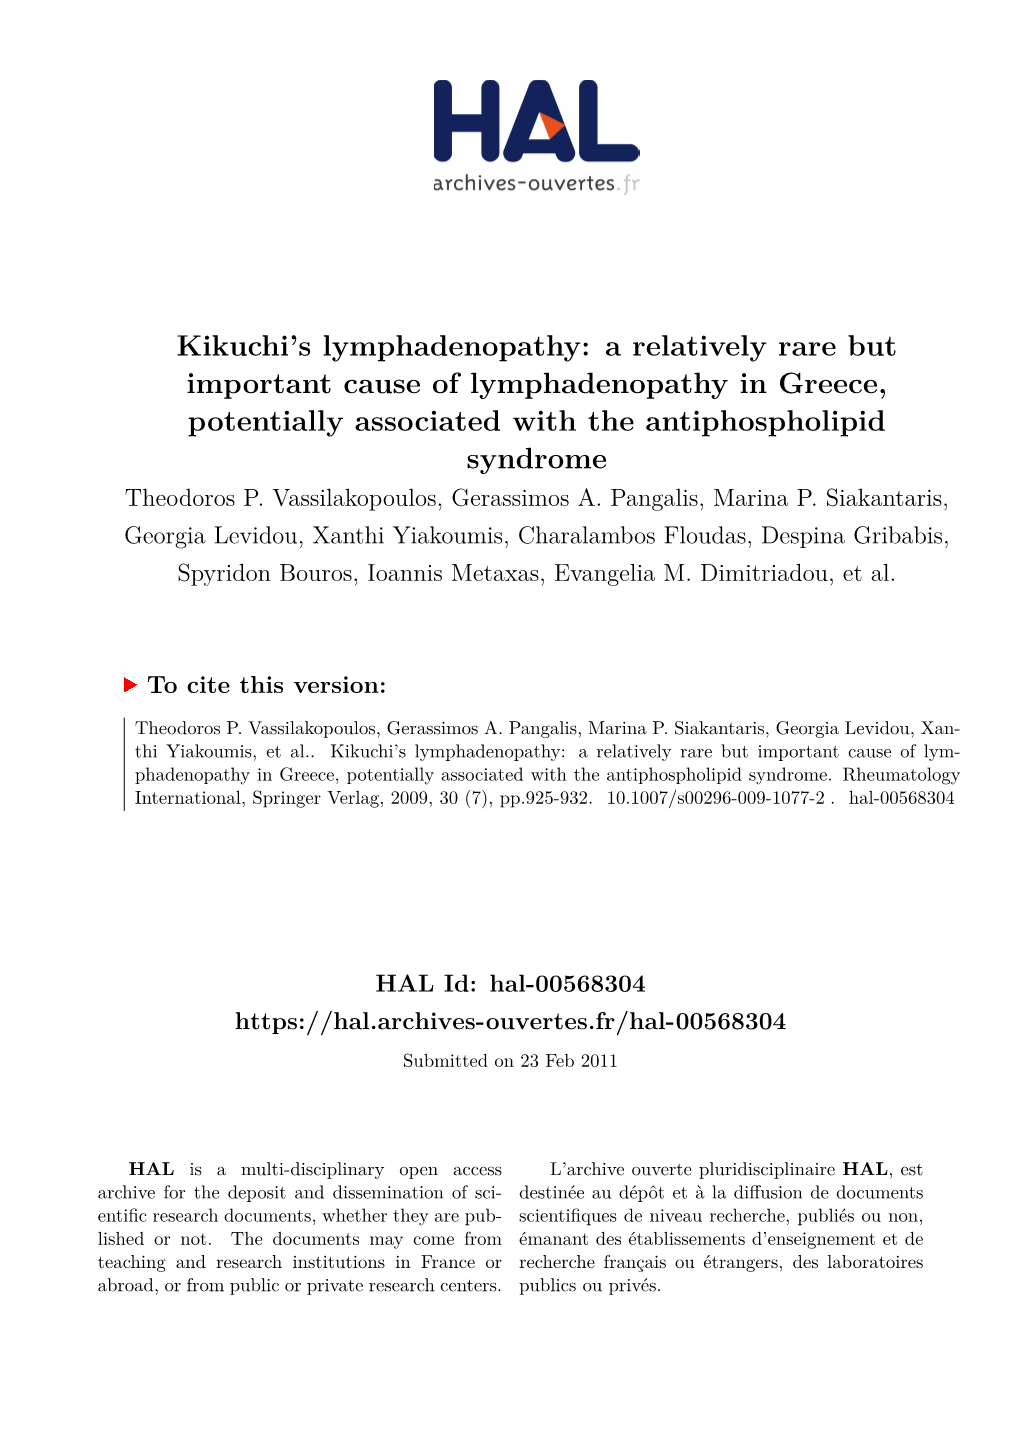 Kikuchi's Lymphadenopathy